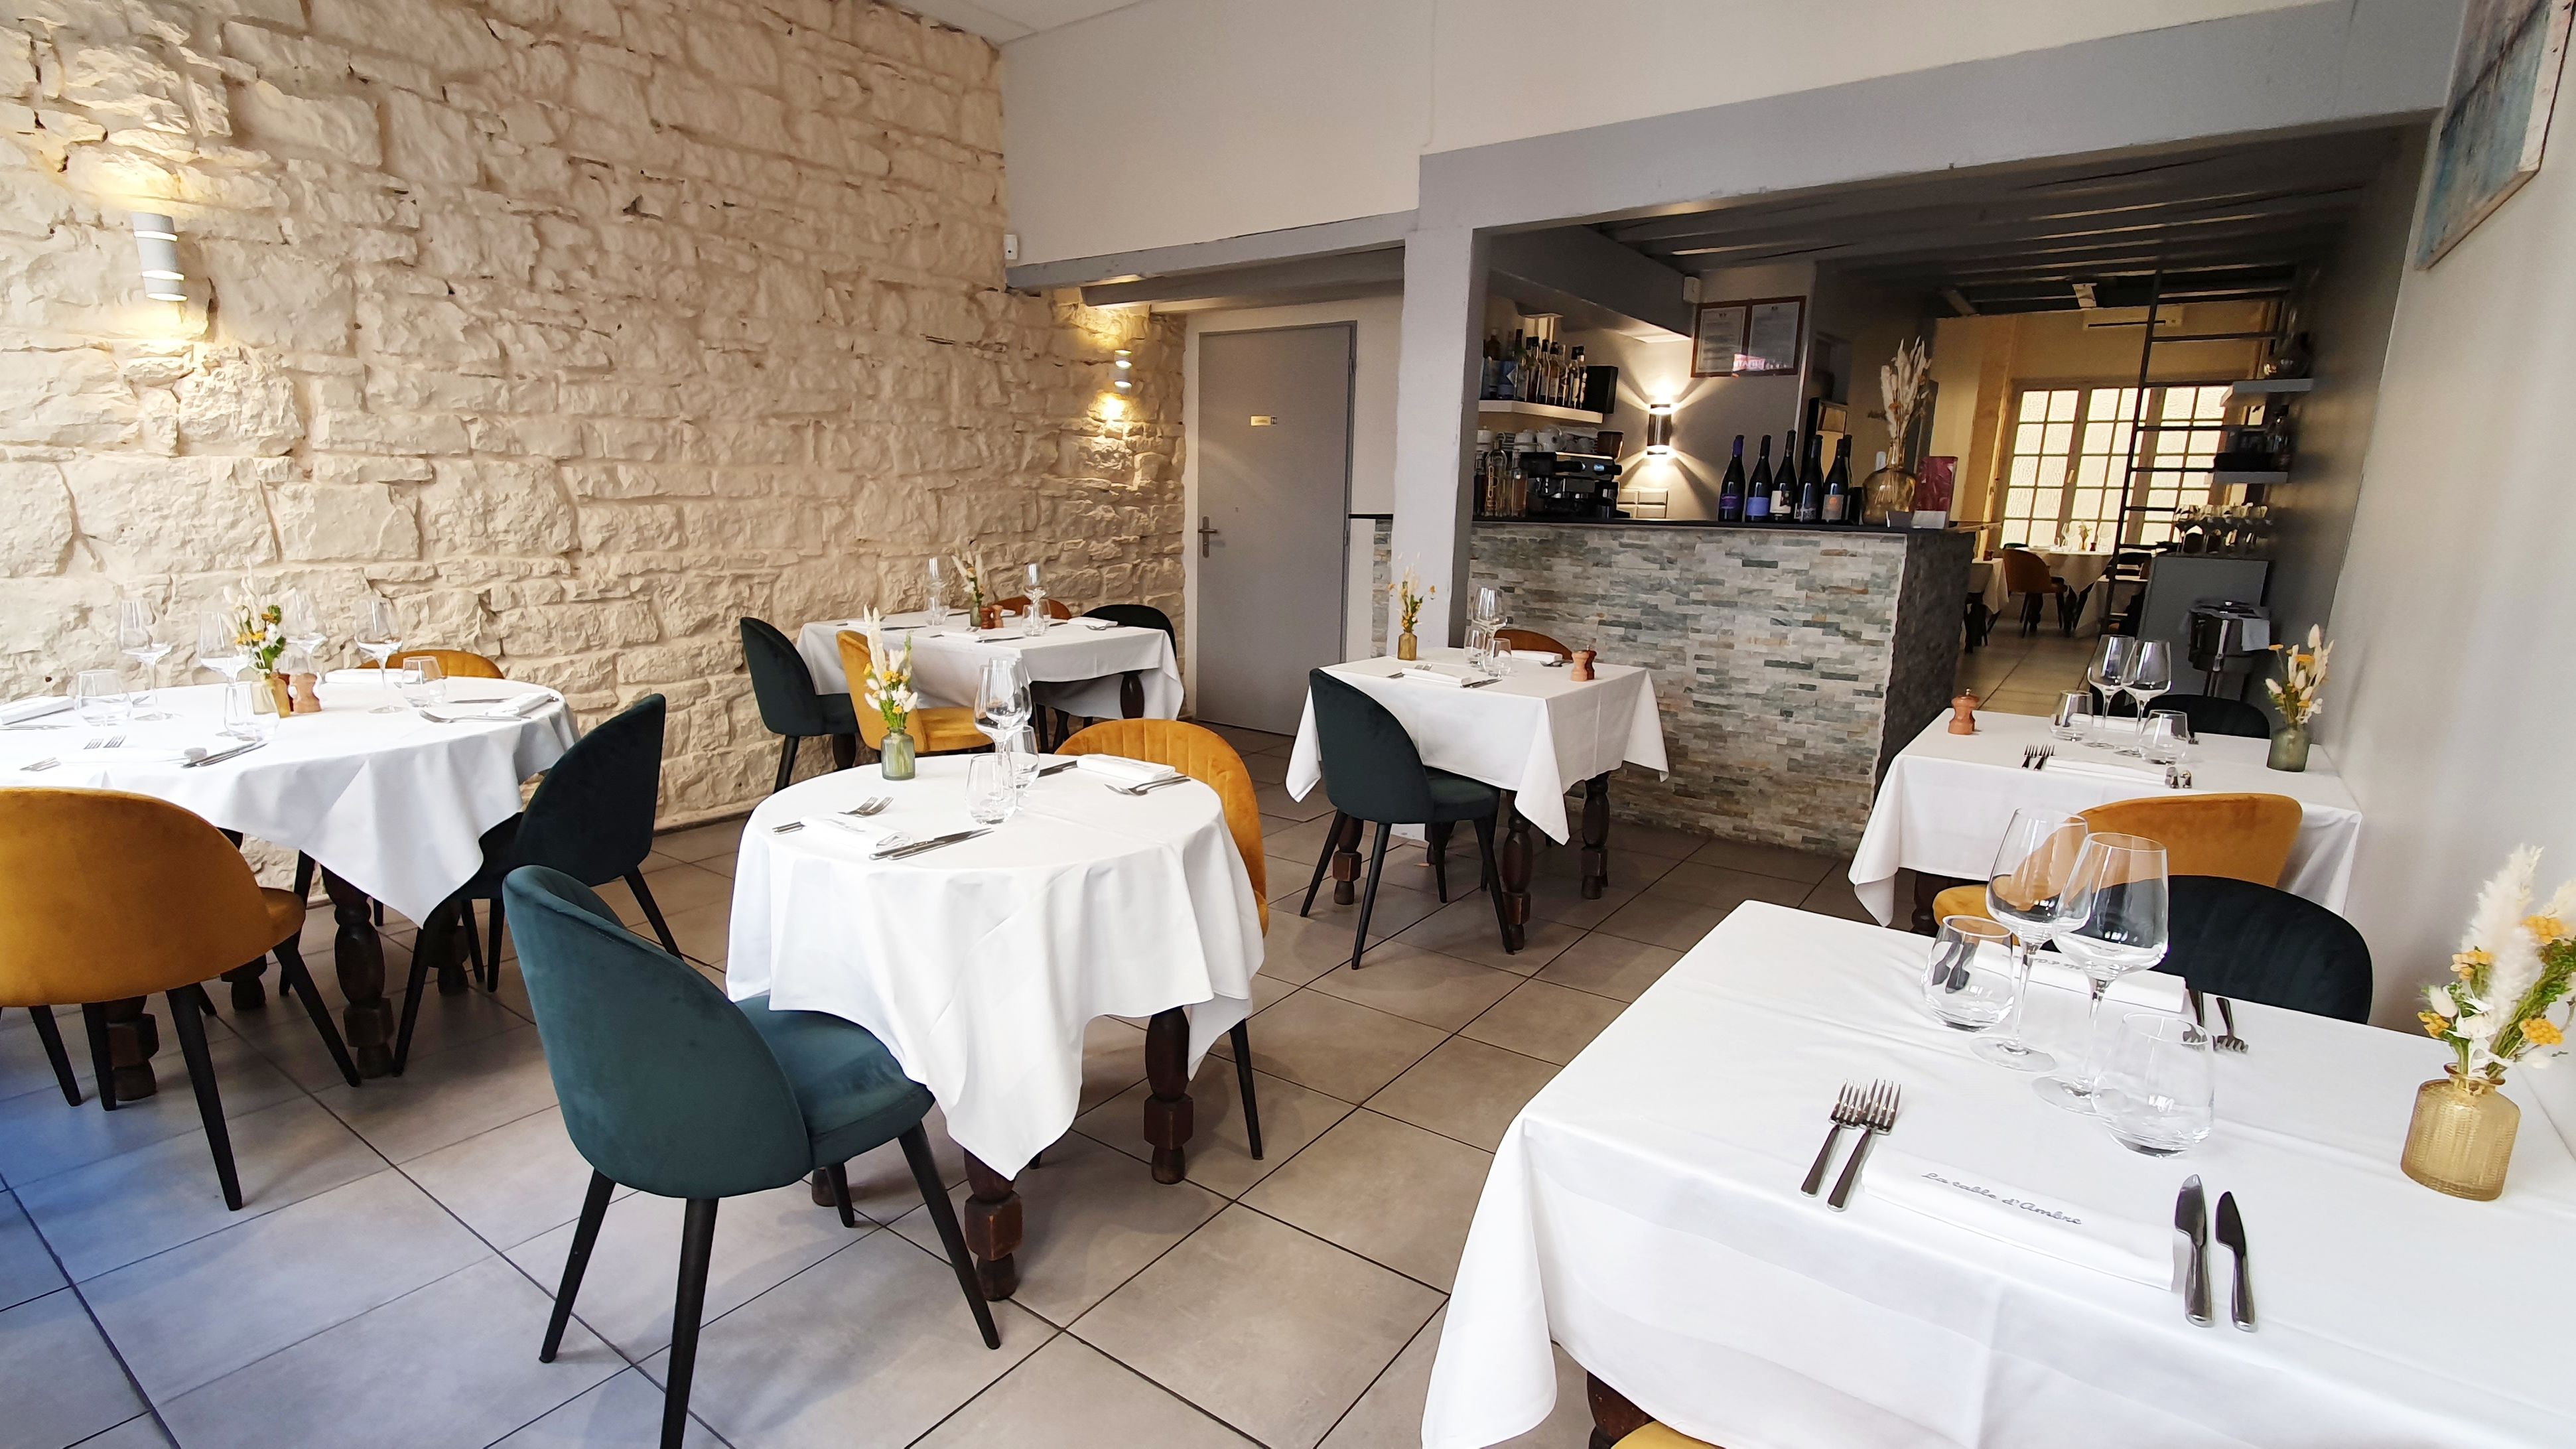 Salle du restaurant - La Table d'Ambre, Lyon